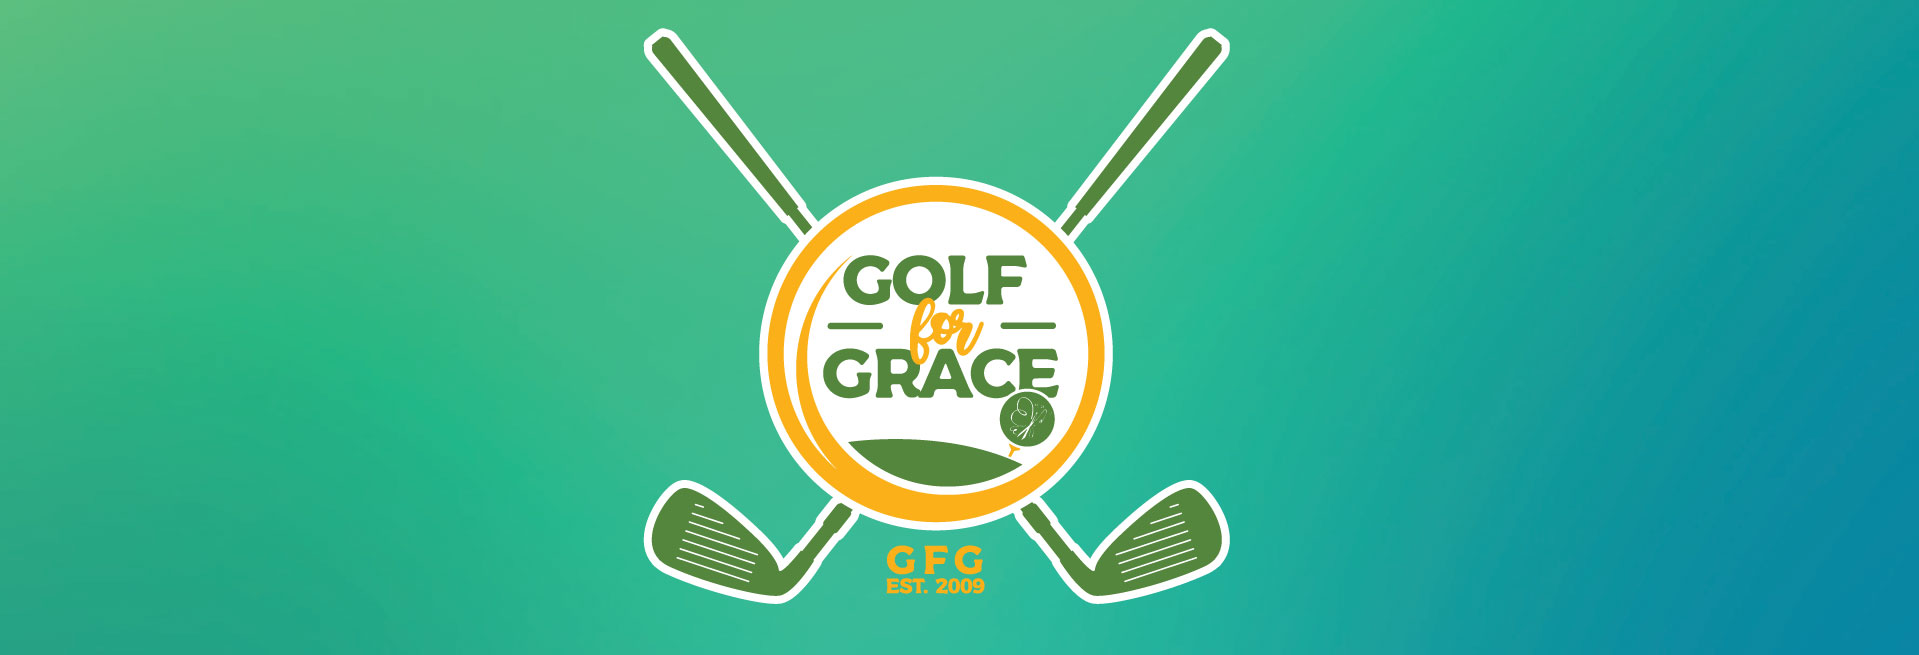 golf for grace